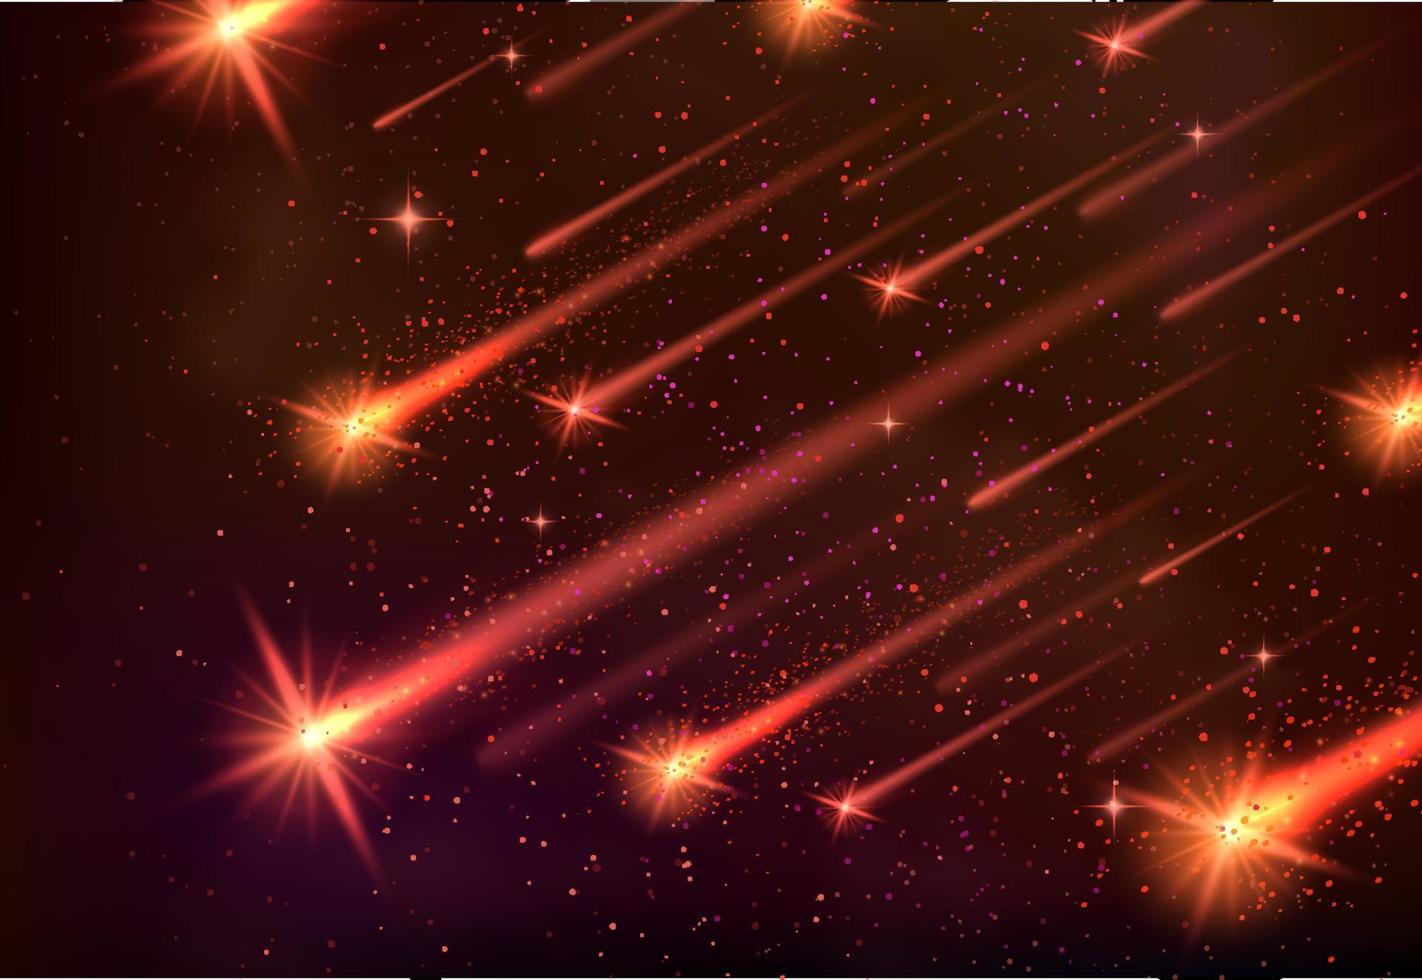 Raumvektor-Banner von Meteoritenschauern, Sternschnuppen und fallenden Kometen oder Asteroiden mit leuchtend gelben Meteoriten-Feuerbällen, leuchtenden Feuerspuren und orangefarbenen Schimmer. Galaxie, Universum und Astronomie vektor